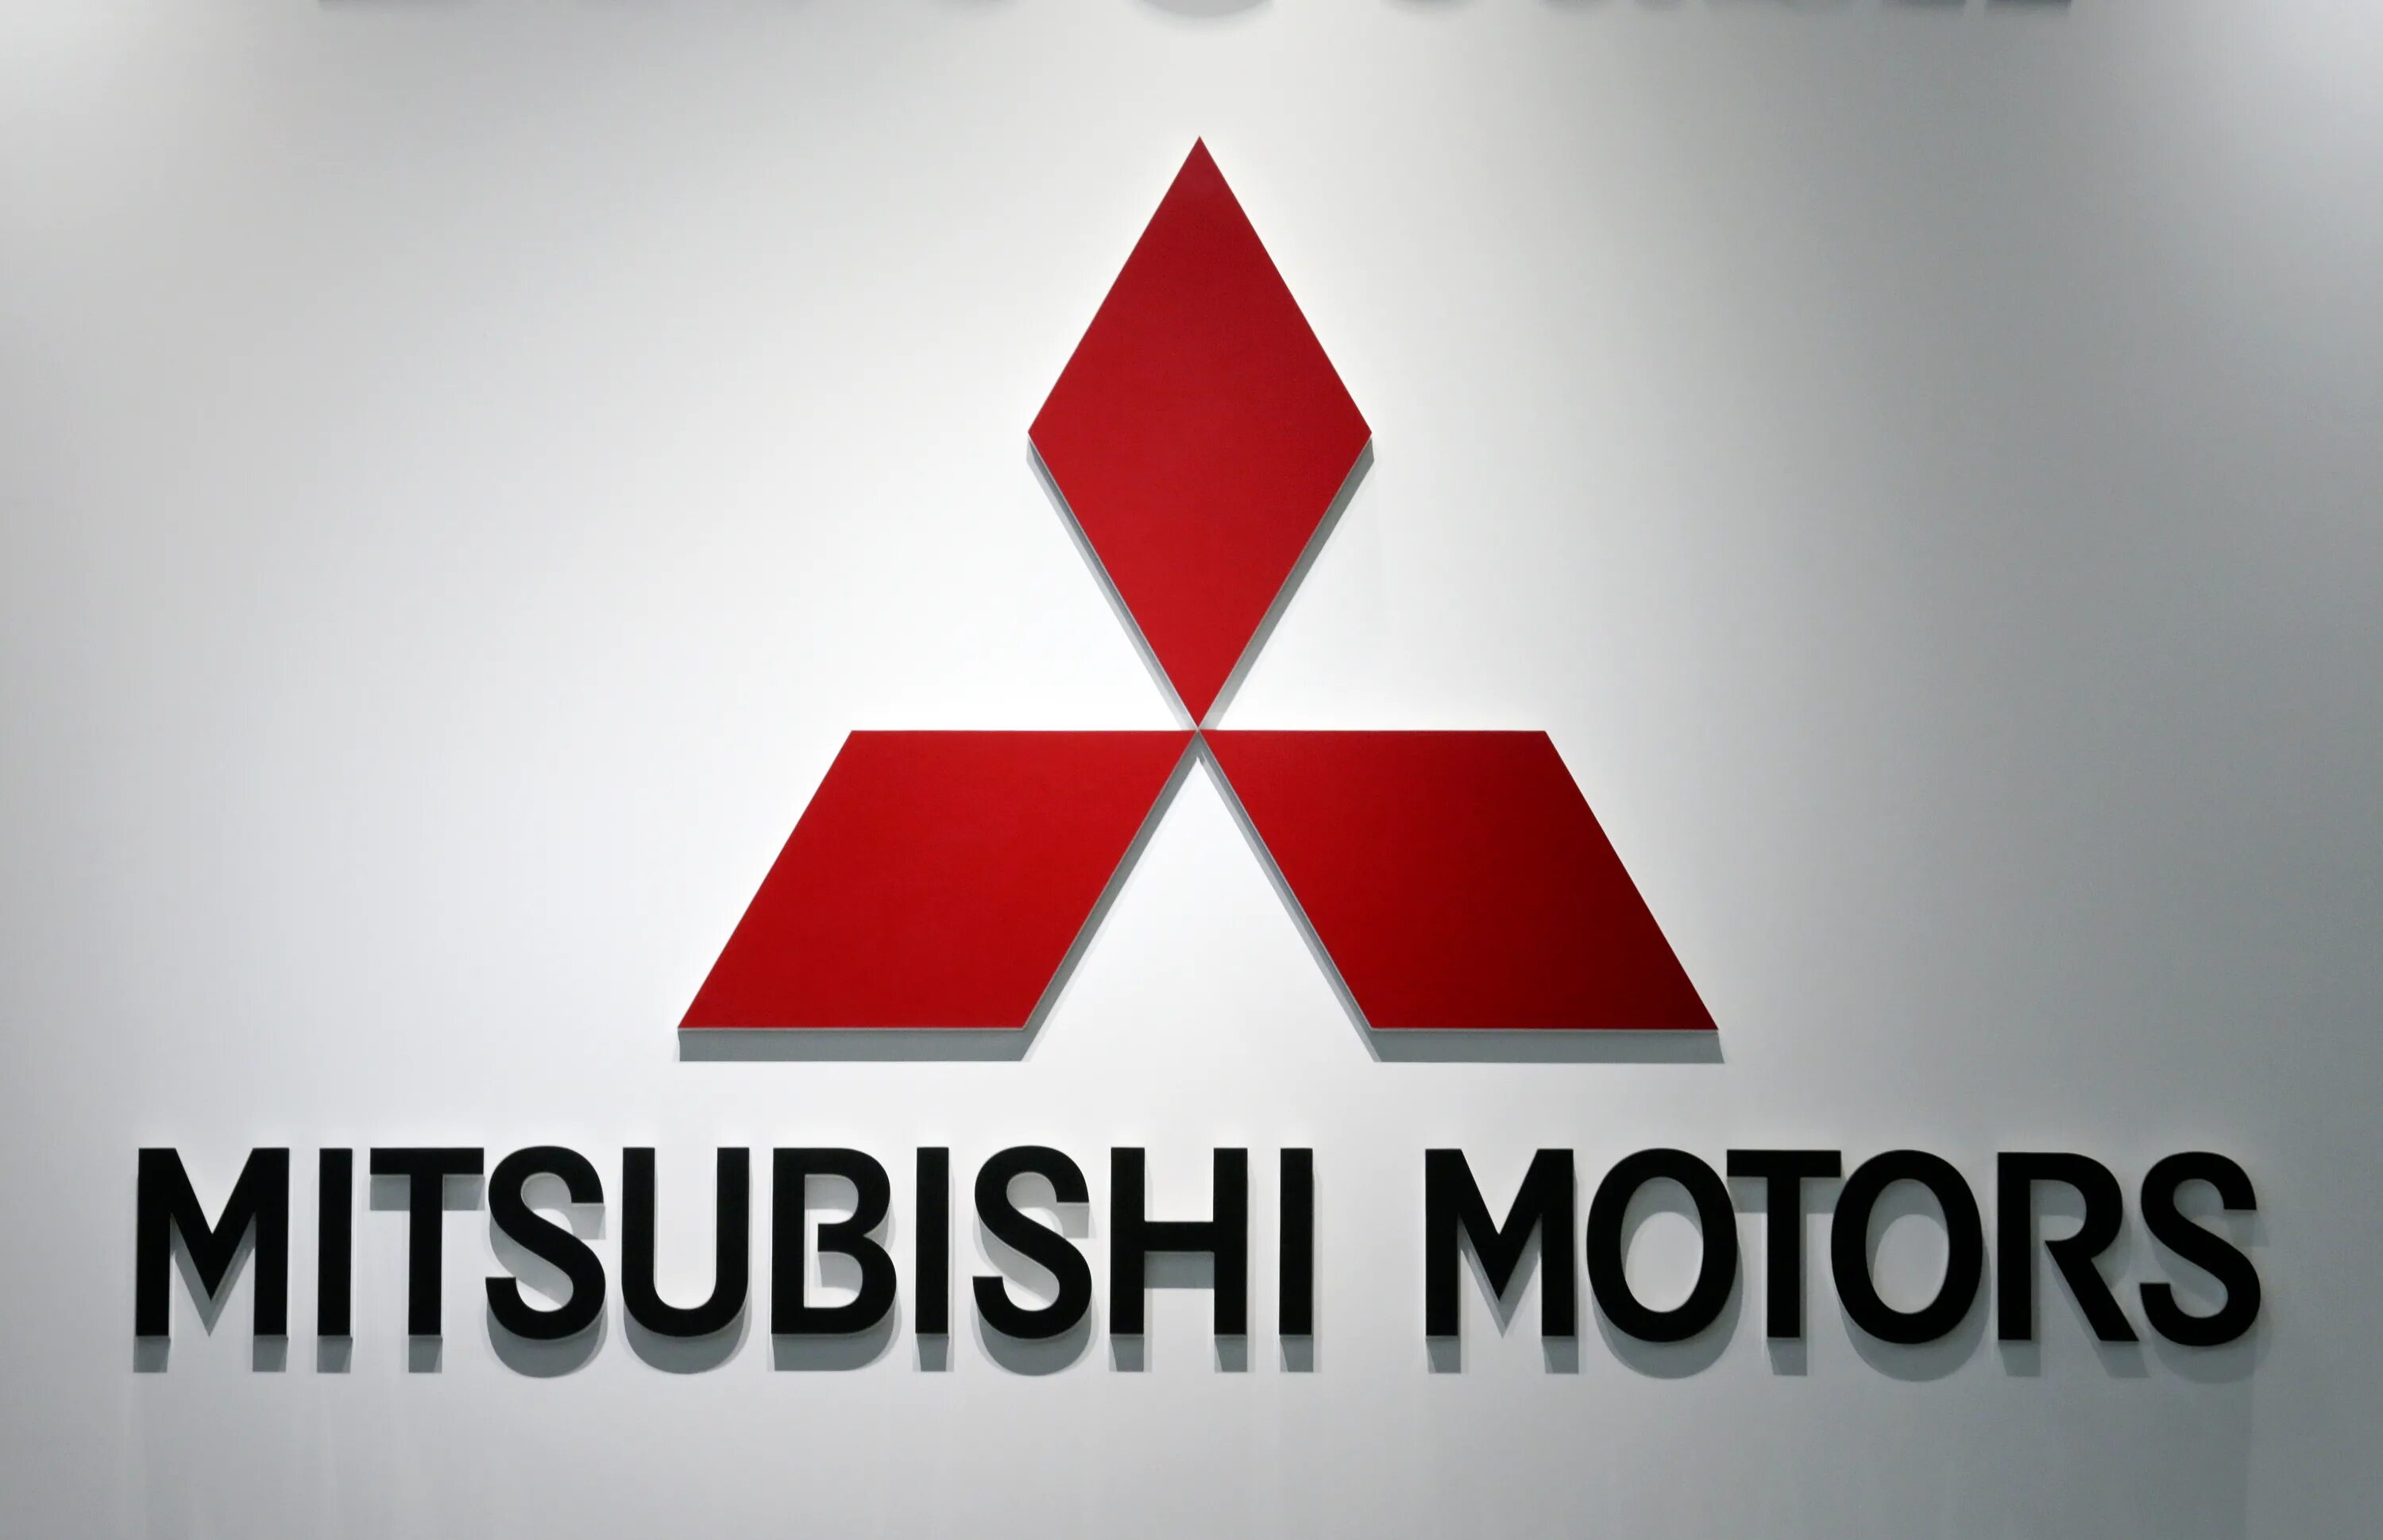 Mitsubishi logo 2021. Mitsubishi значок Mitsubishi. Mitsubishi Motors Corporation logo. Mitsubishi Group автомобили Mitsubishi 2010 года.